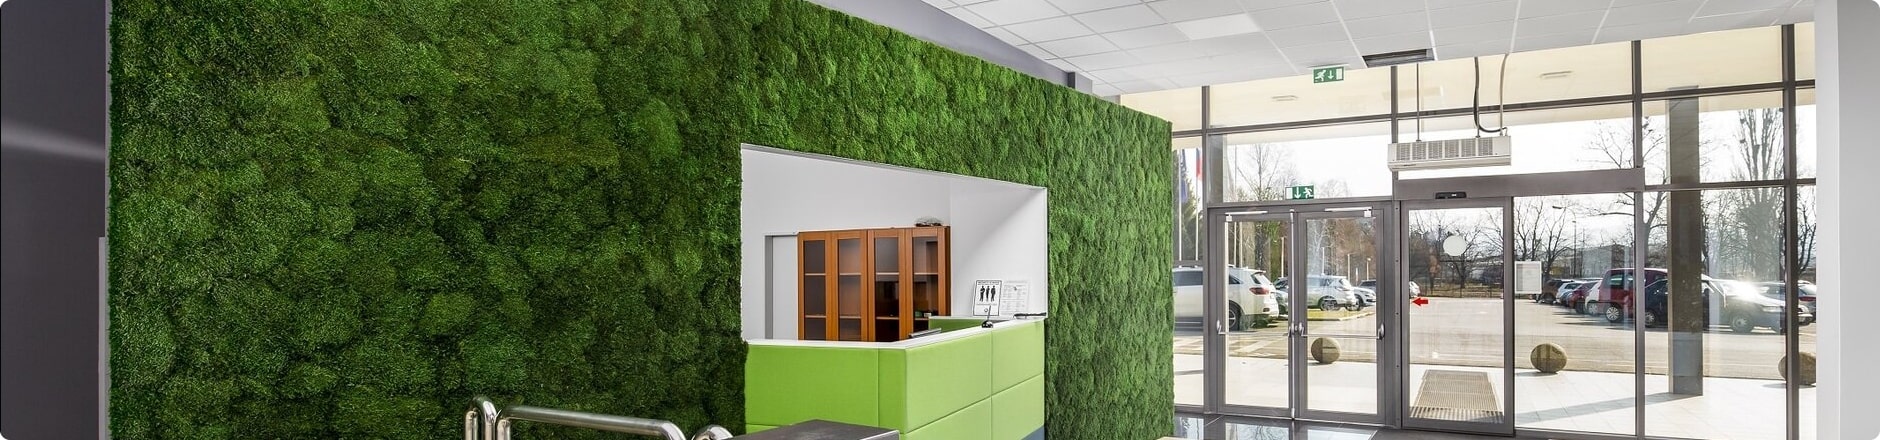 eine grüne Wand mit einer Tür und einem Fenster darin und eine grüne Graswand dahinter und ein Metallhandlauf, moosbild, mooswand, moos pflanzen, moos, moos deko, moos art